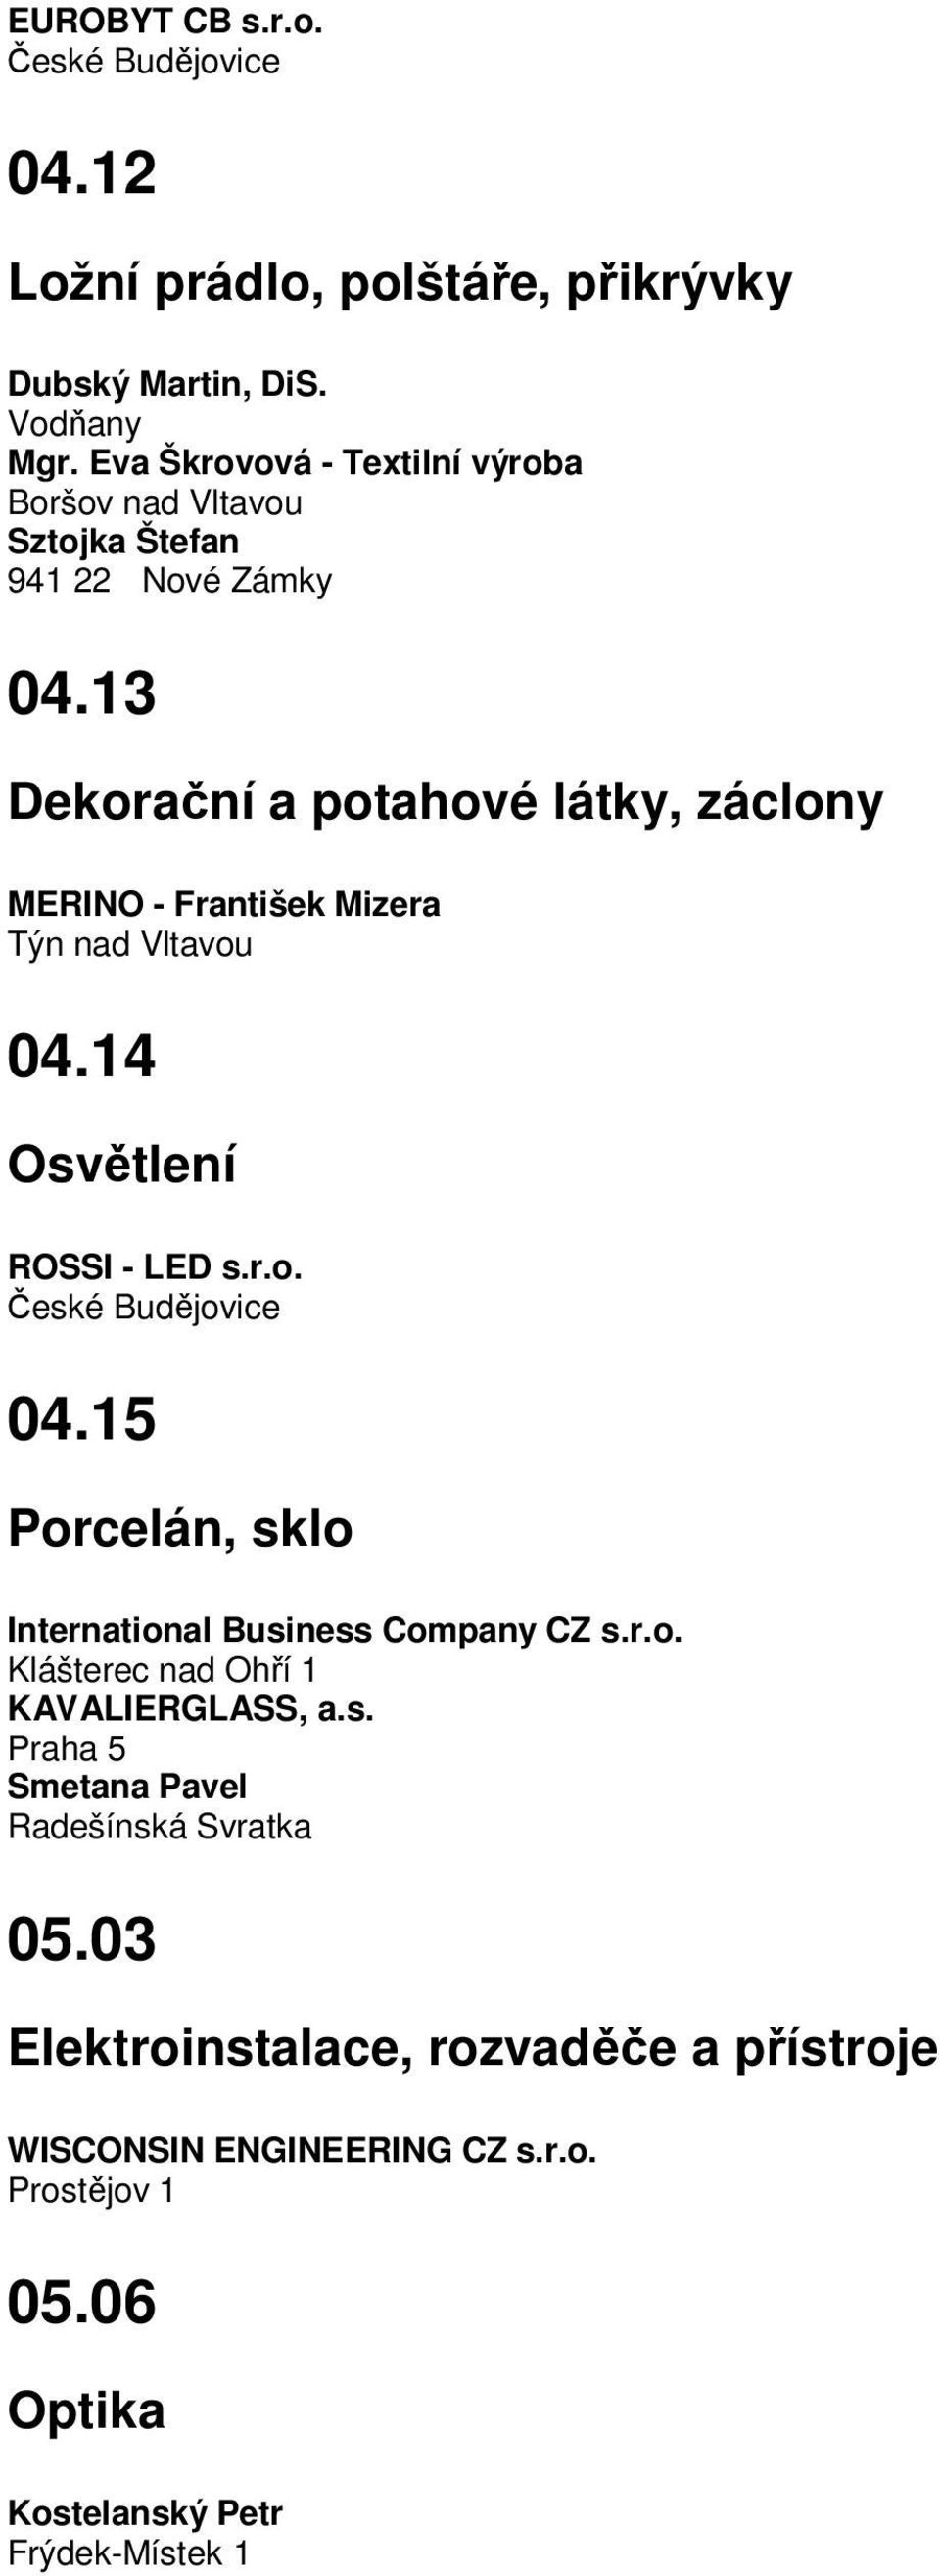 13 Dekorační a potahové látky, záclony MERINO - František Mizera Týn nad Vltavou 04.14 Osvětlení ROSSI - LED s.r.o. 04.15 Porcelán, sklo International Business Company CZ s.